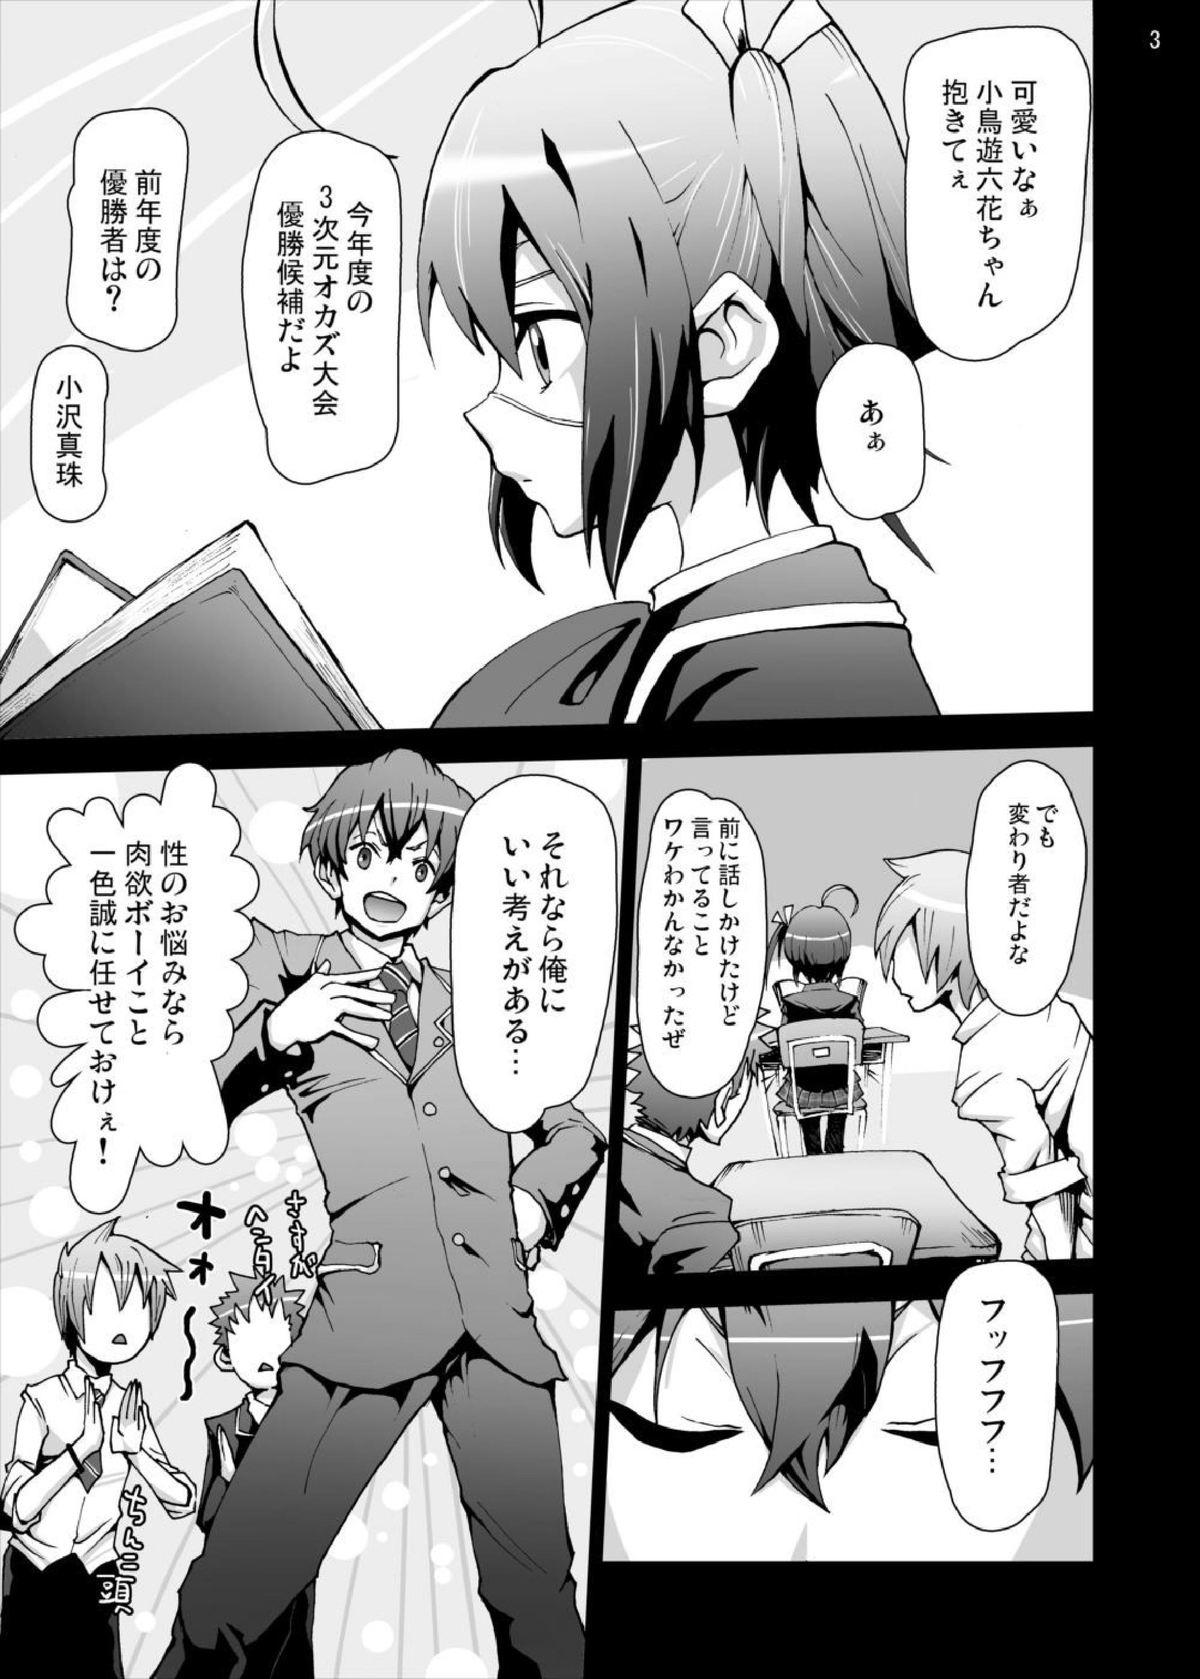  Rikka-chan no Hitsuu... Chuunibyou demo Rape wa Itai! - Chuunibyou demo koi ga shitai Amateurs - Page 3